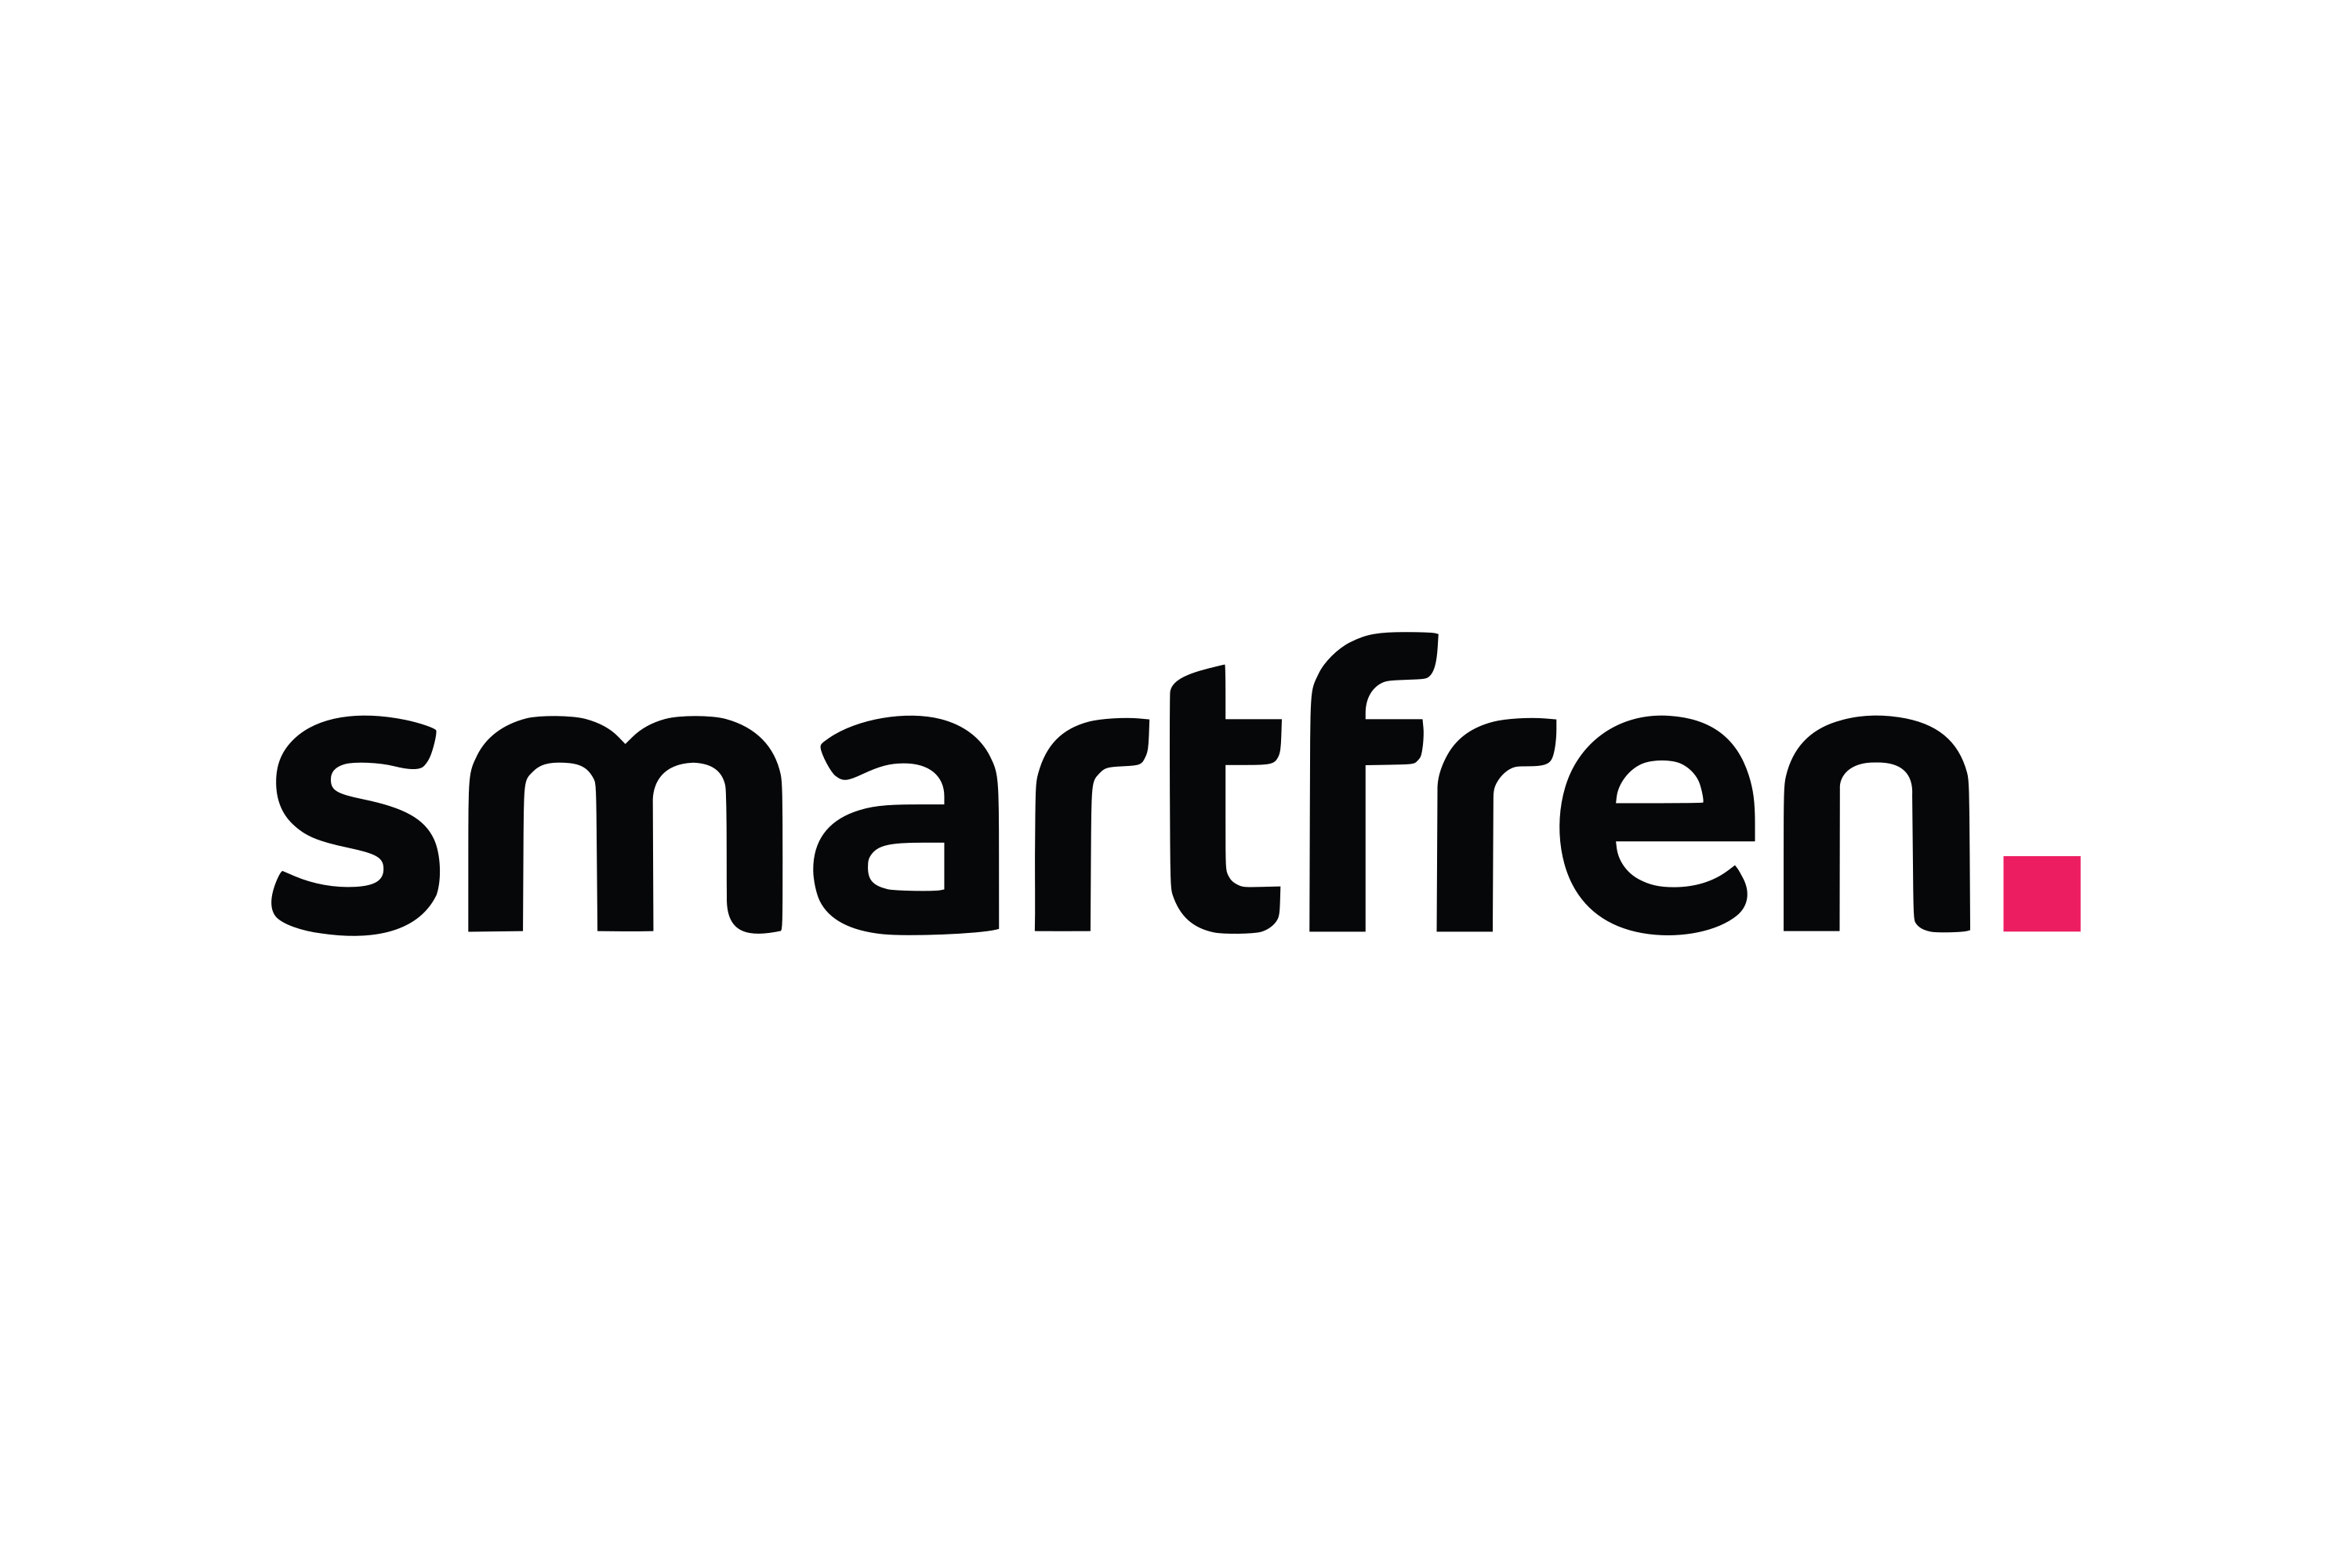 Smartfren Logo Png - KibrisPDR